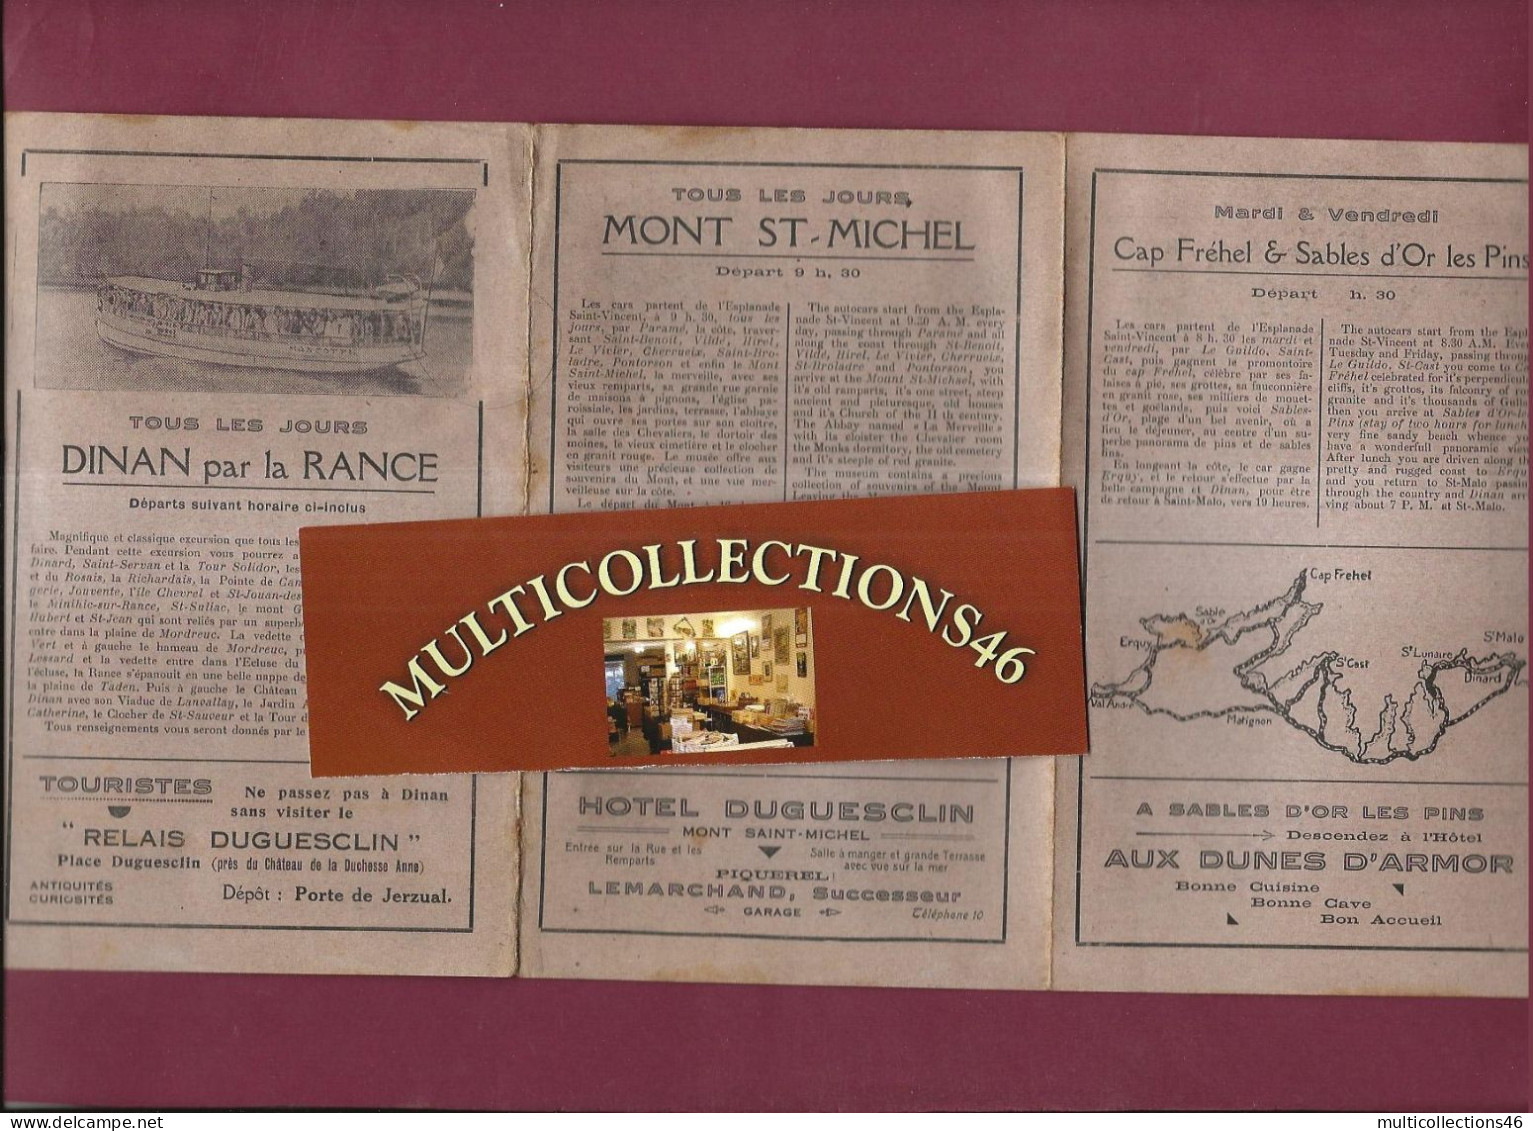 160524 - DEPLIANT TOURISTIQUE - MONT ST MICHEL DINAN CAP FREHEL  CANCALE Autocar Vedette - Dépliants Touristiques